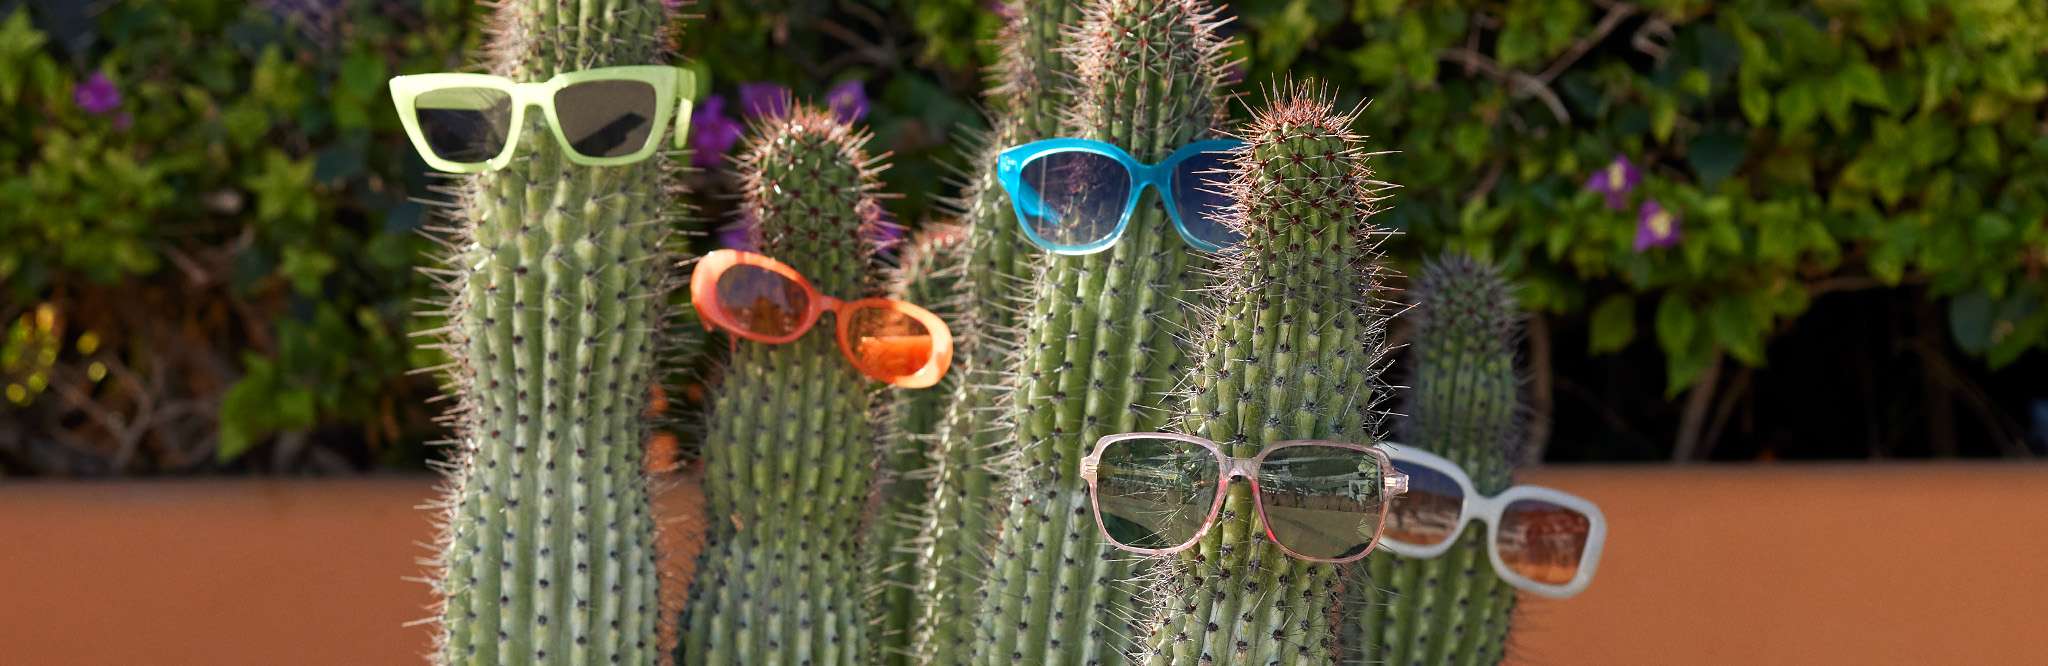 sunglasses on cacti